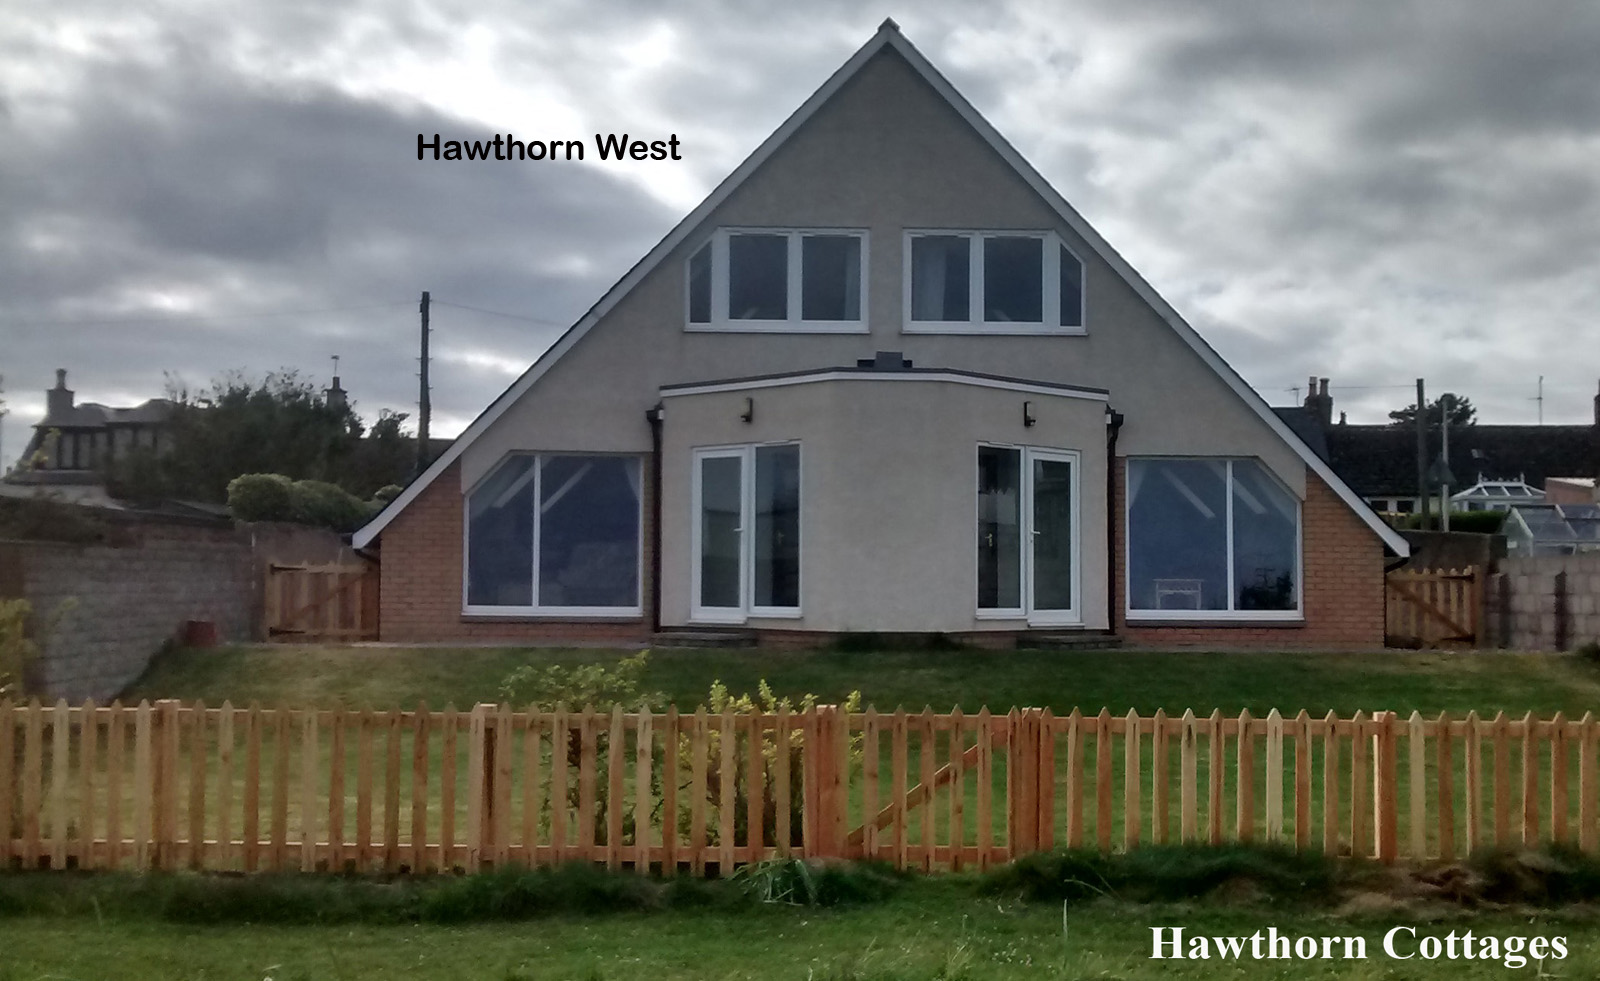 Hawthorn Cottage carnoustie